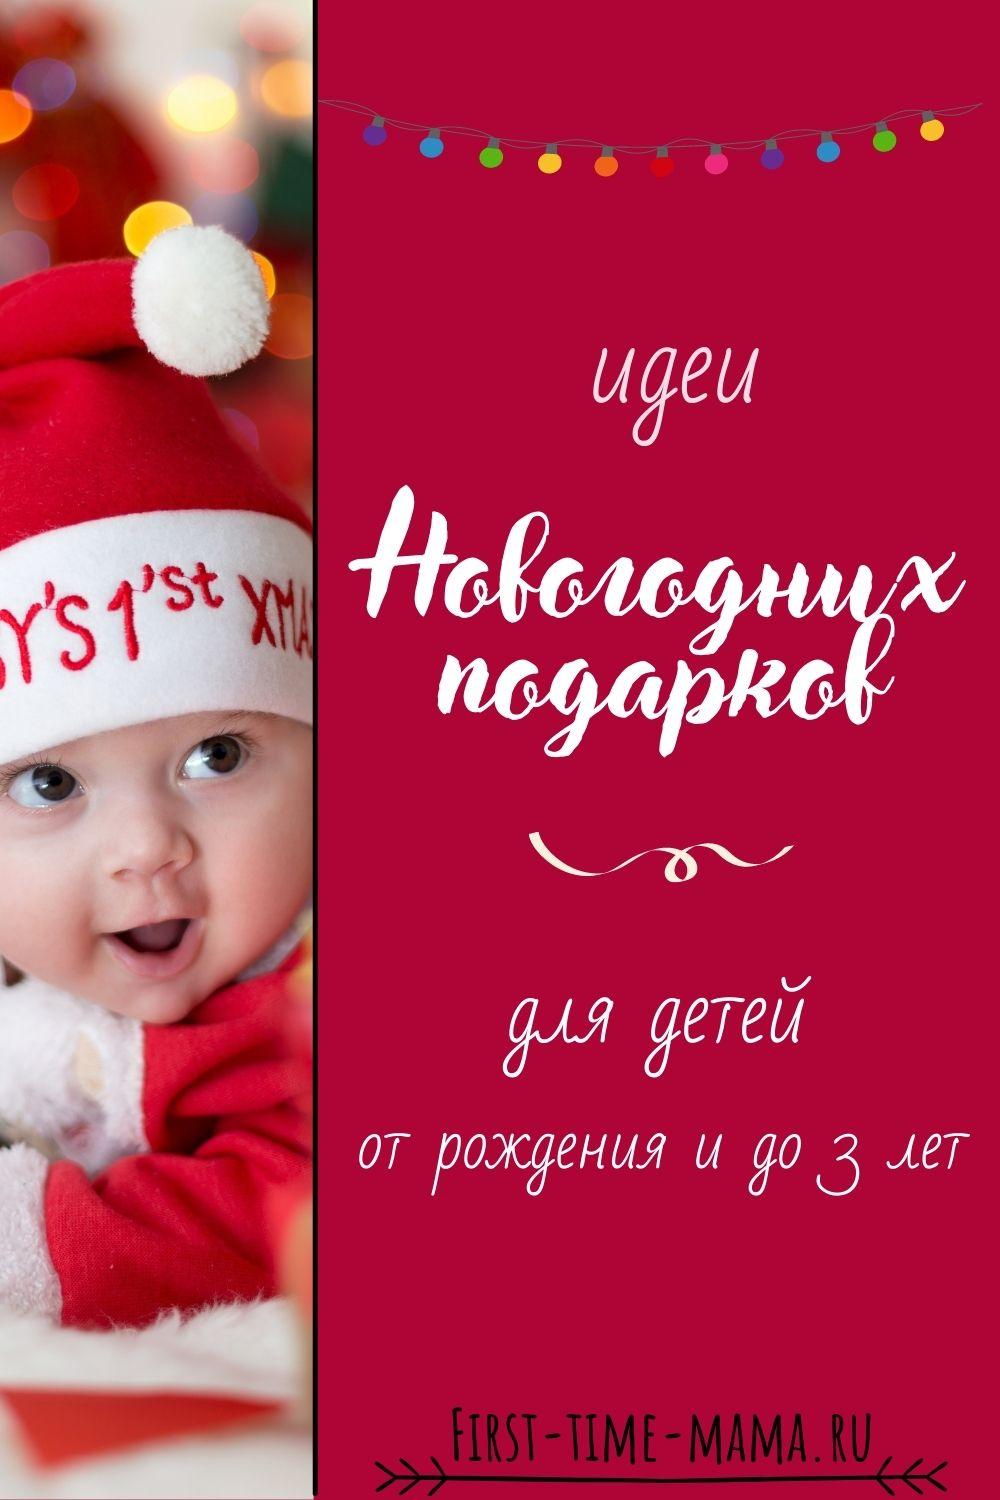 Идеи новогодних подарков для детей | Впервые мама first-time-mama.ru